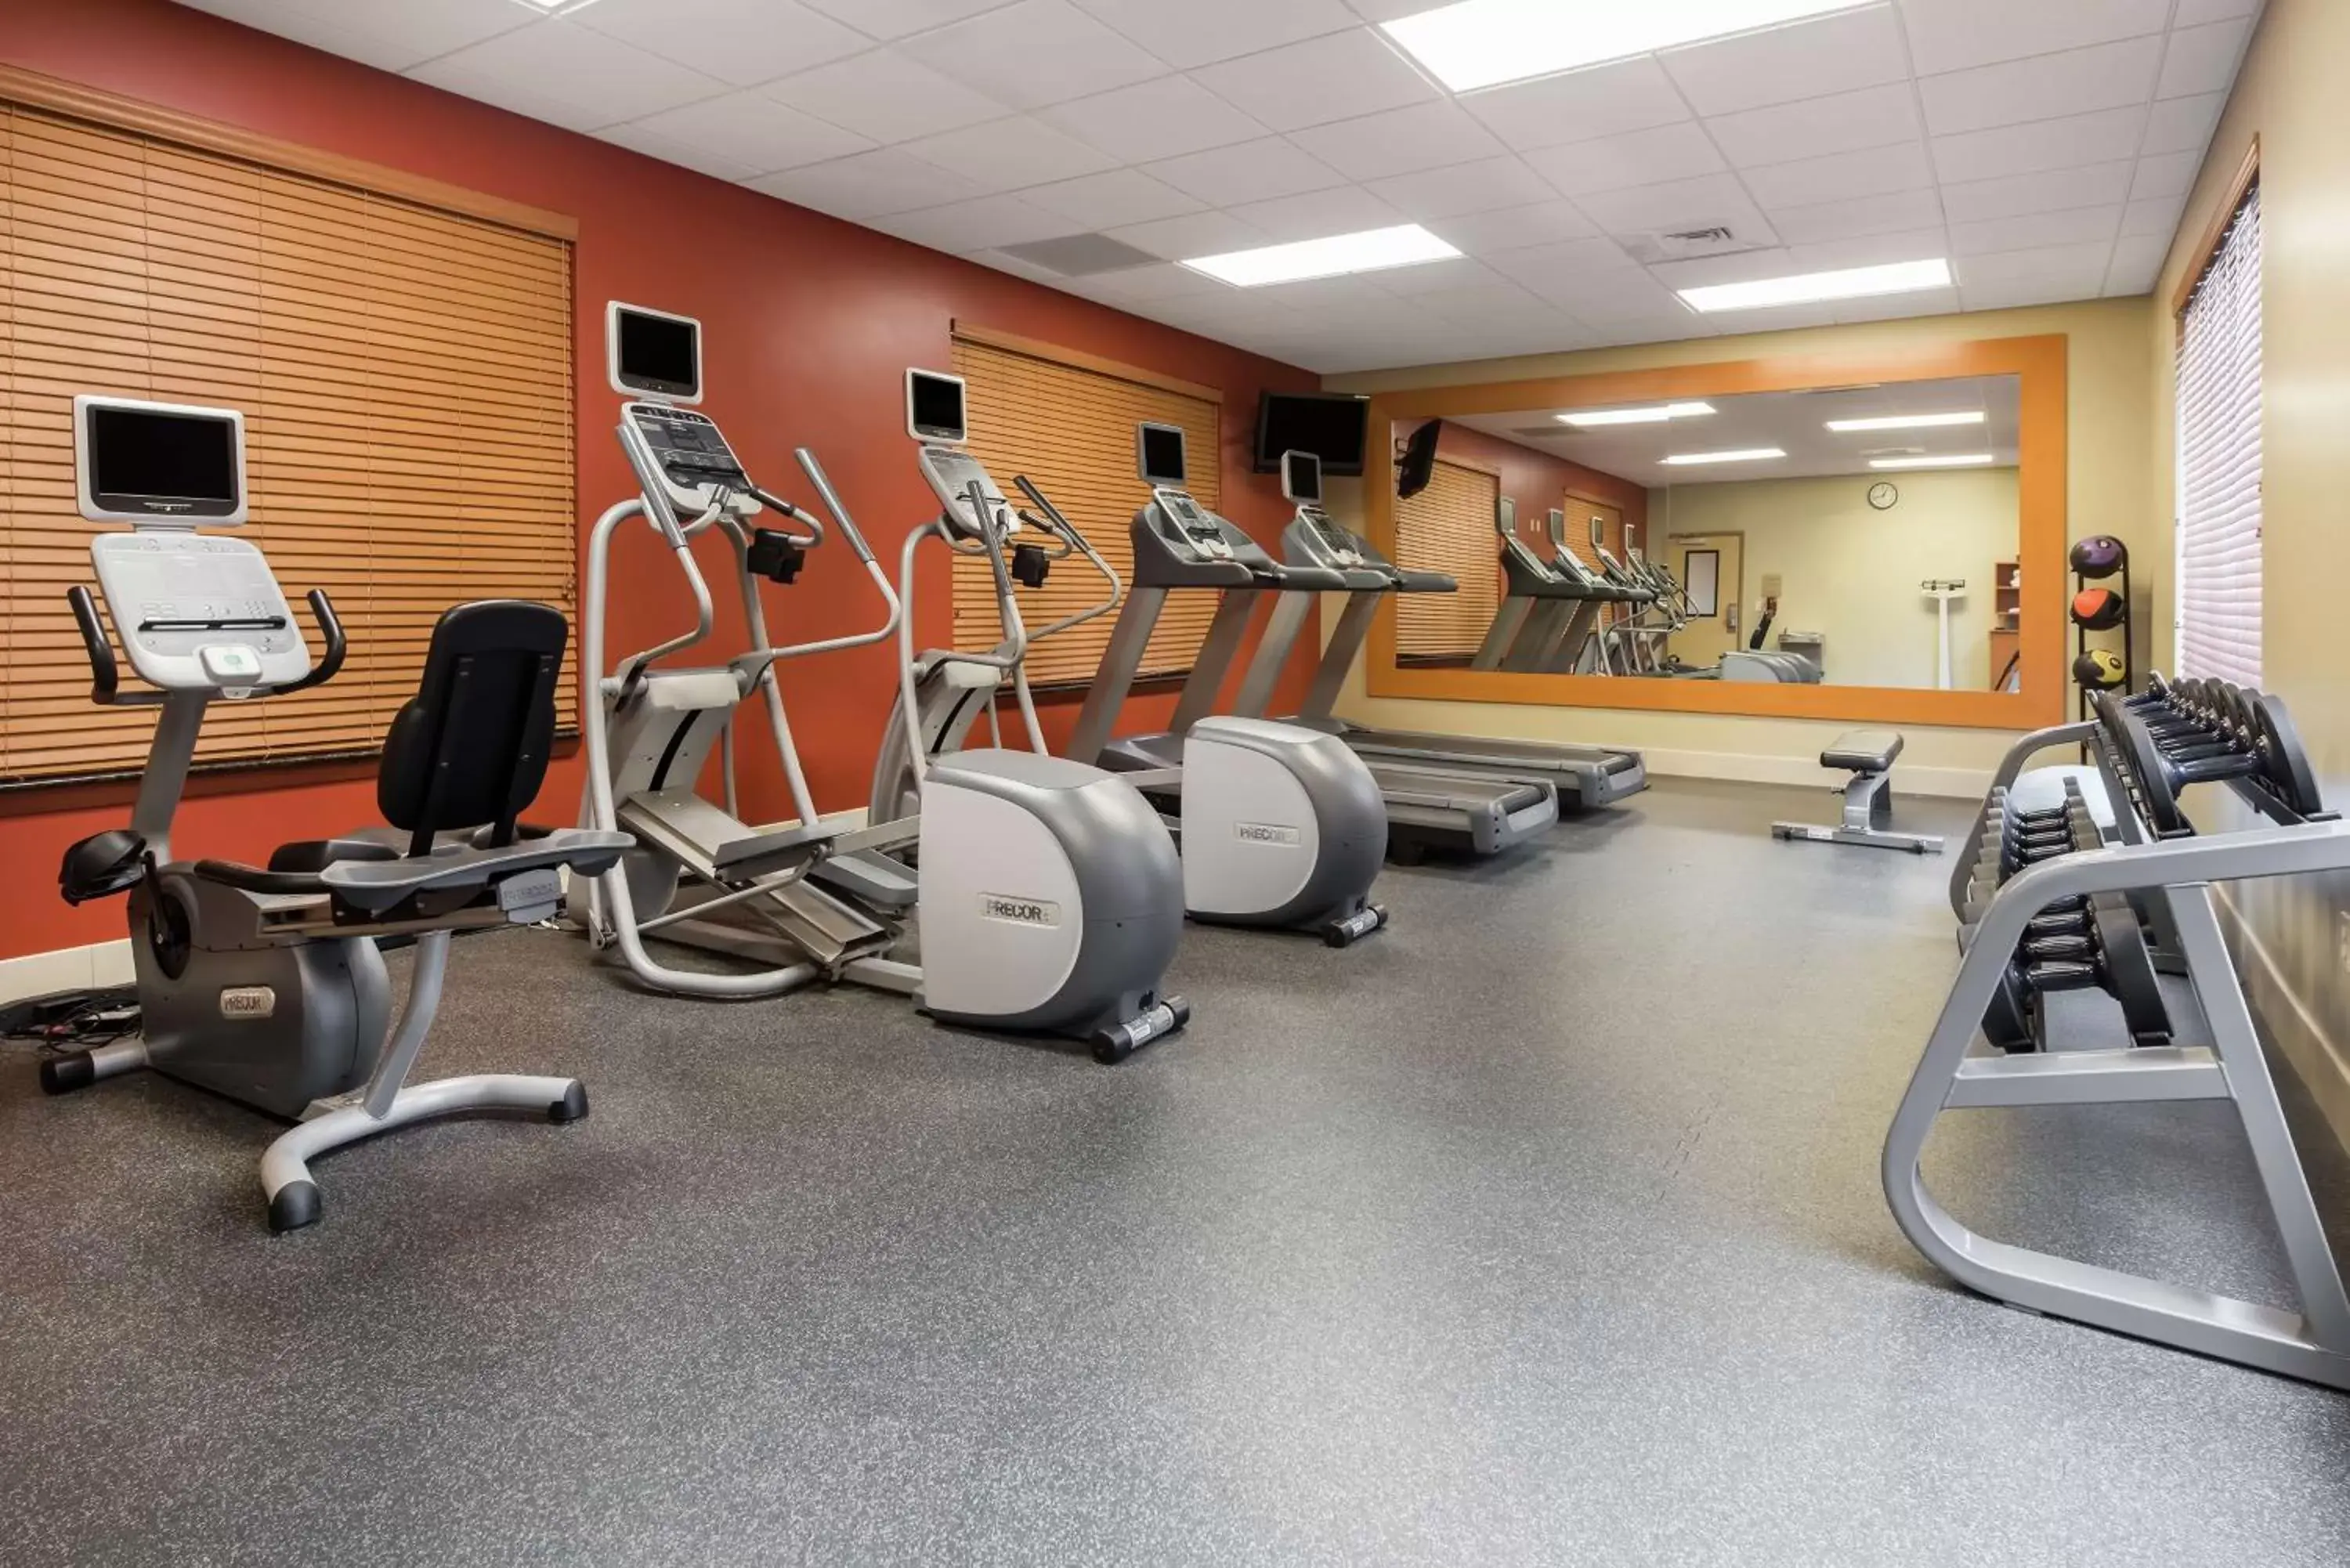 Fitness centre/facilities, Fitness Center/Facilities in Hilton Garden Inn St. Louis Shiloh/O'Fallon IL